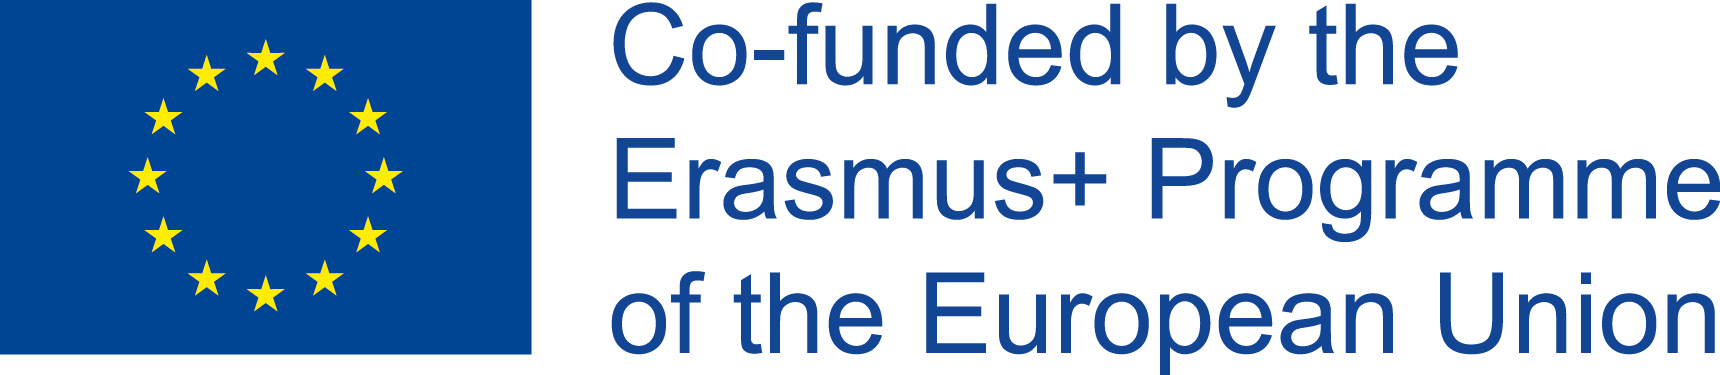 EU logo_blue_right